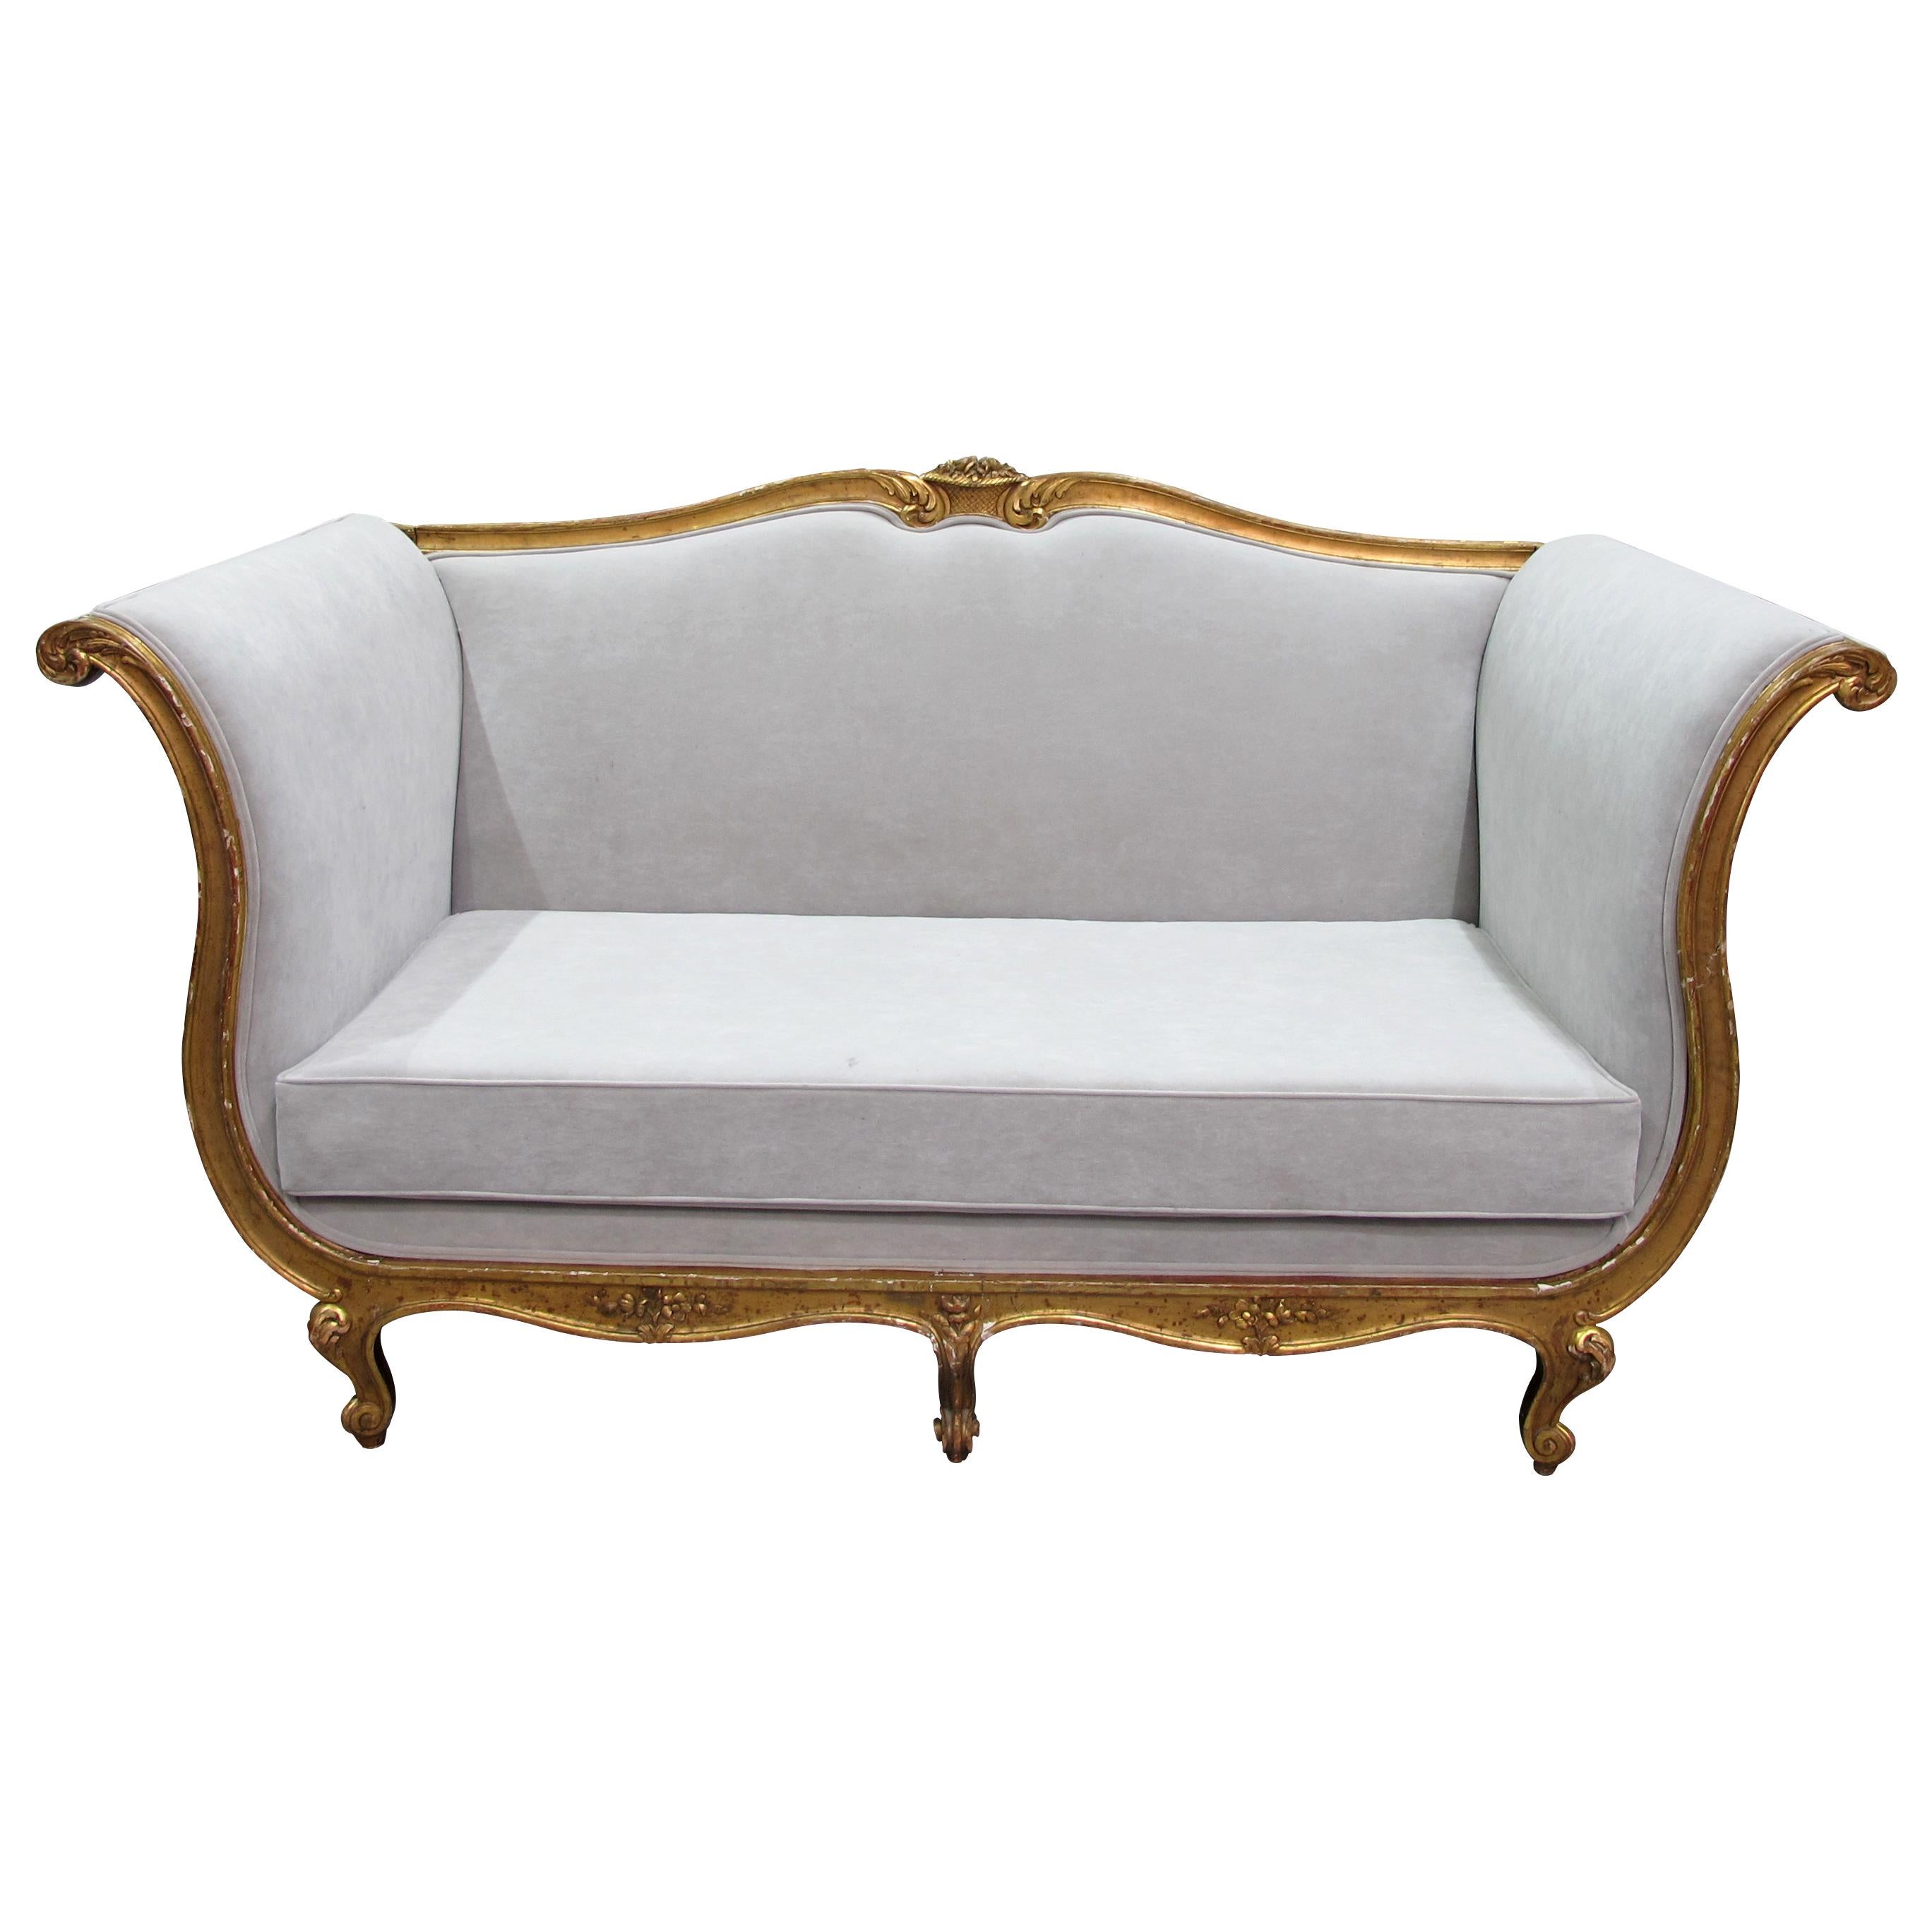 Dies ist ein sehr großes und bequemes Sofa aus dem 19. Jahrhundert, das neu mit einem strapazierfähigen, waschbaren, hellgrauen, wildlederähnlichen Stoff bezogen wurde. Diese Art von Möbeln war während der Herrschaft von König Ludwig XV. von